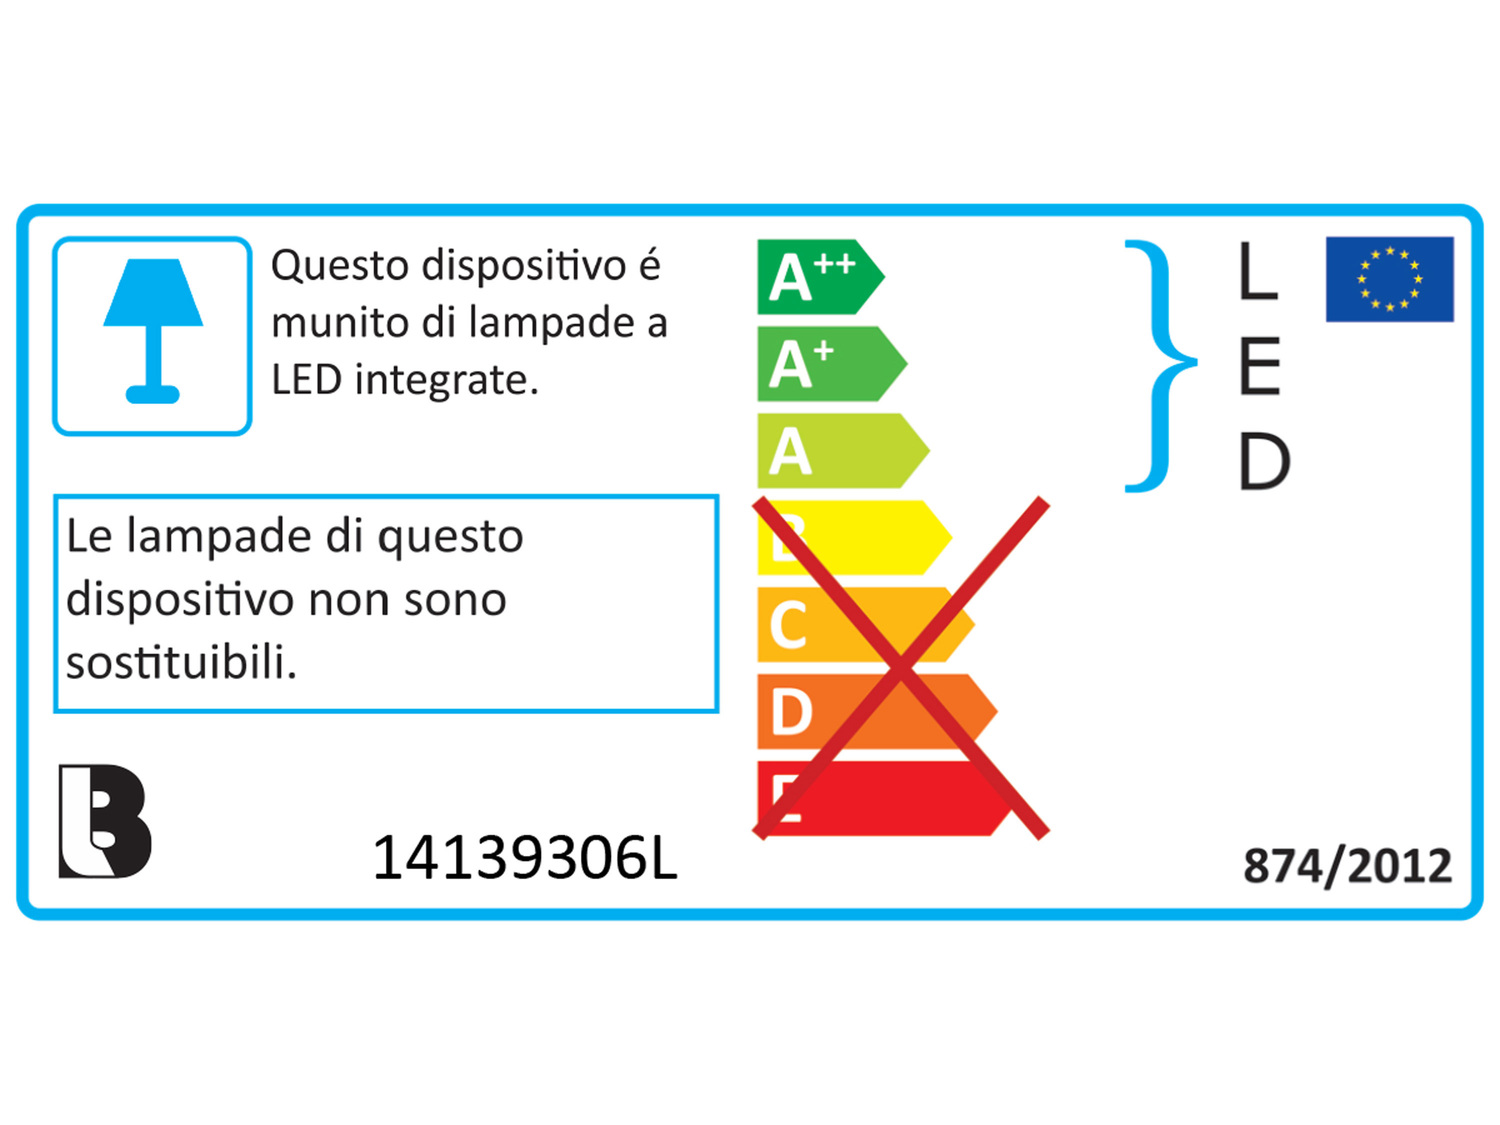 Lampada sottopensile a LED Livarno Lux, prezzo 14.99 &#8364; 
- Riflettore ...